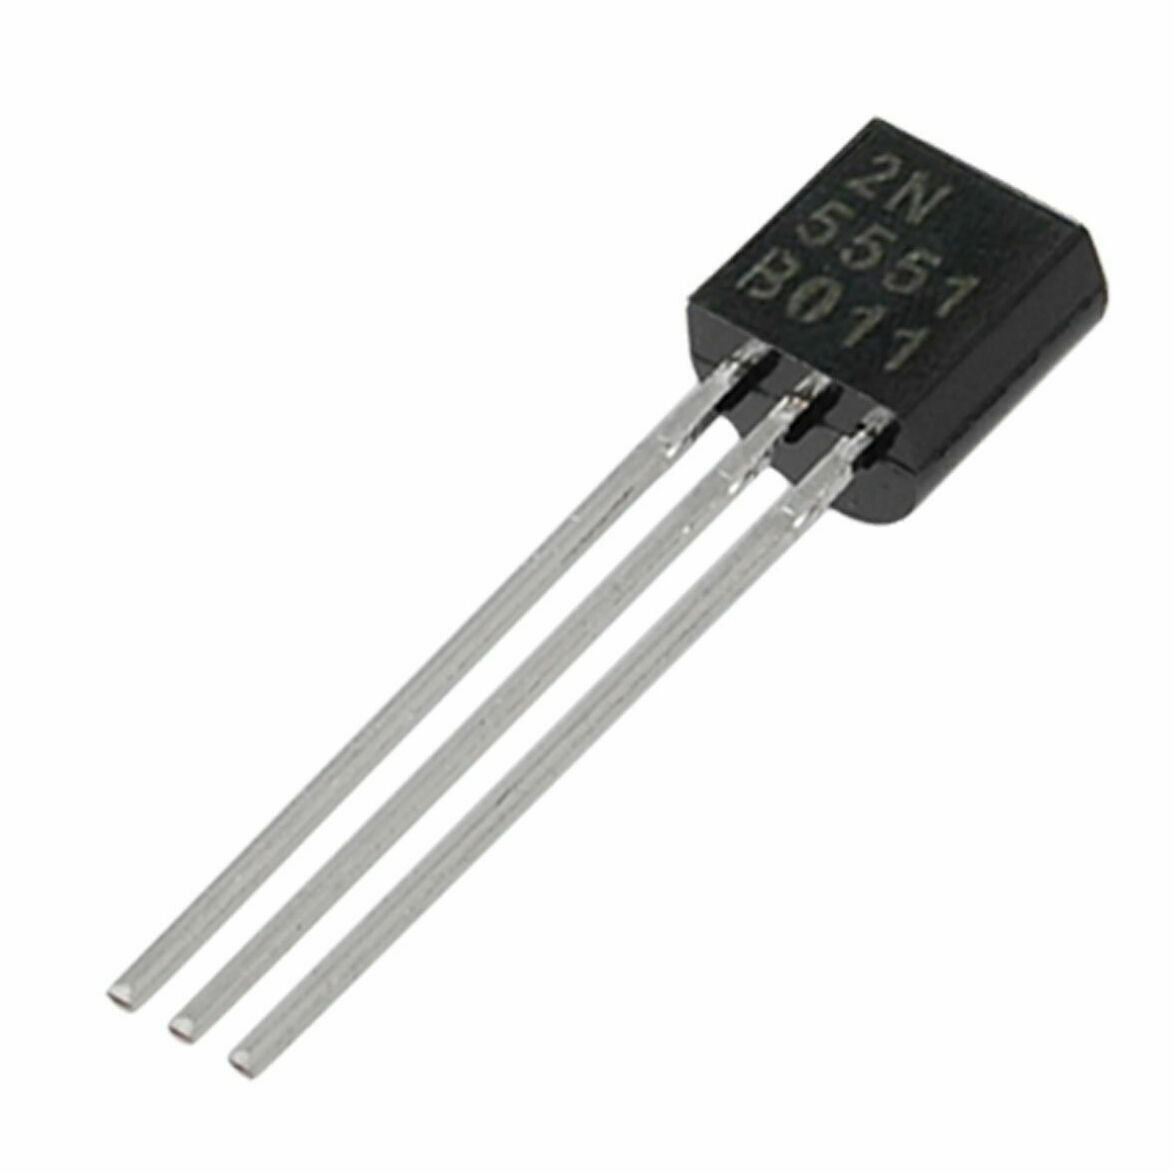 2N5551 High Voltage NPN Transistor 160V (CE) (25 pack)